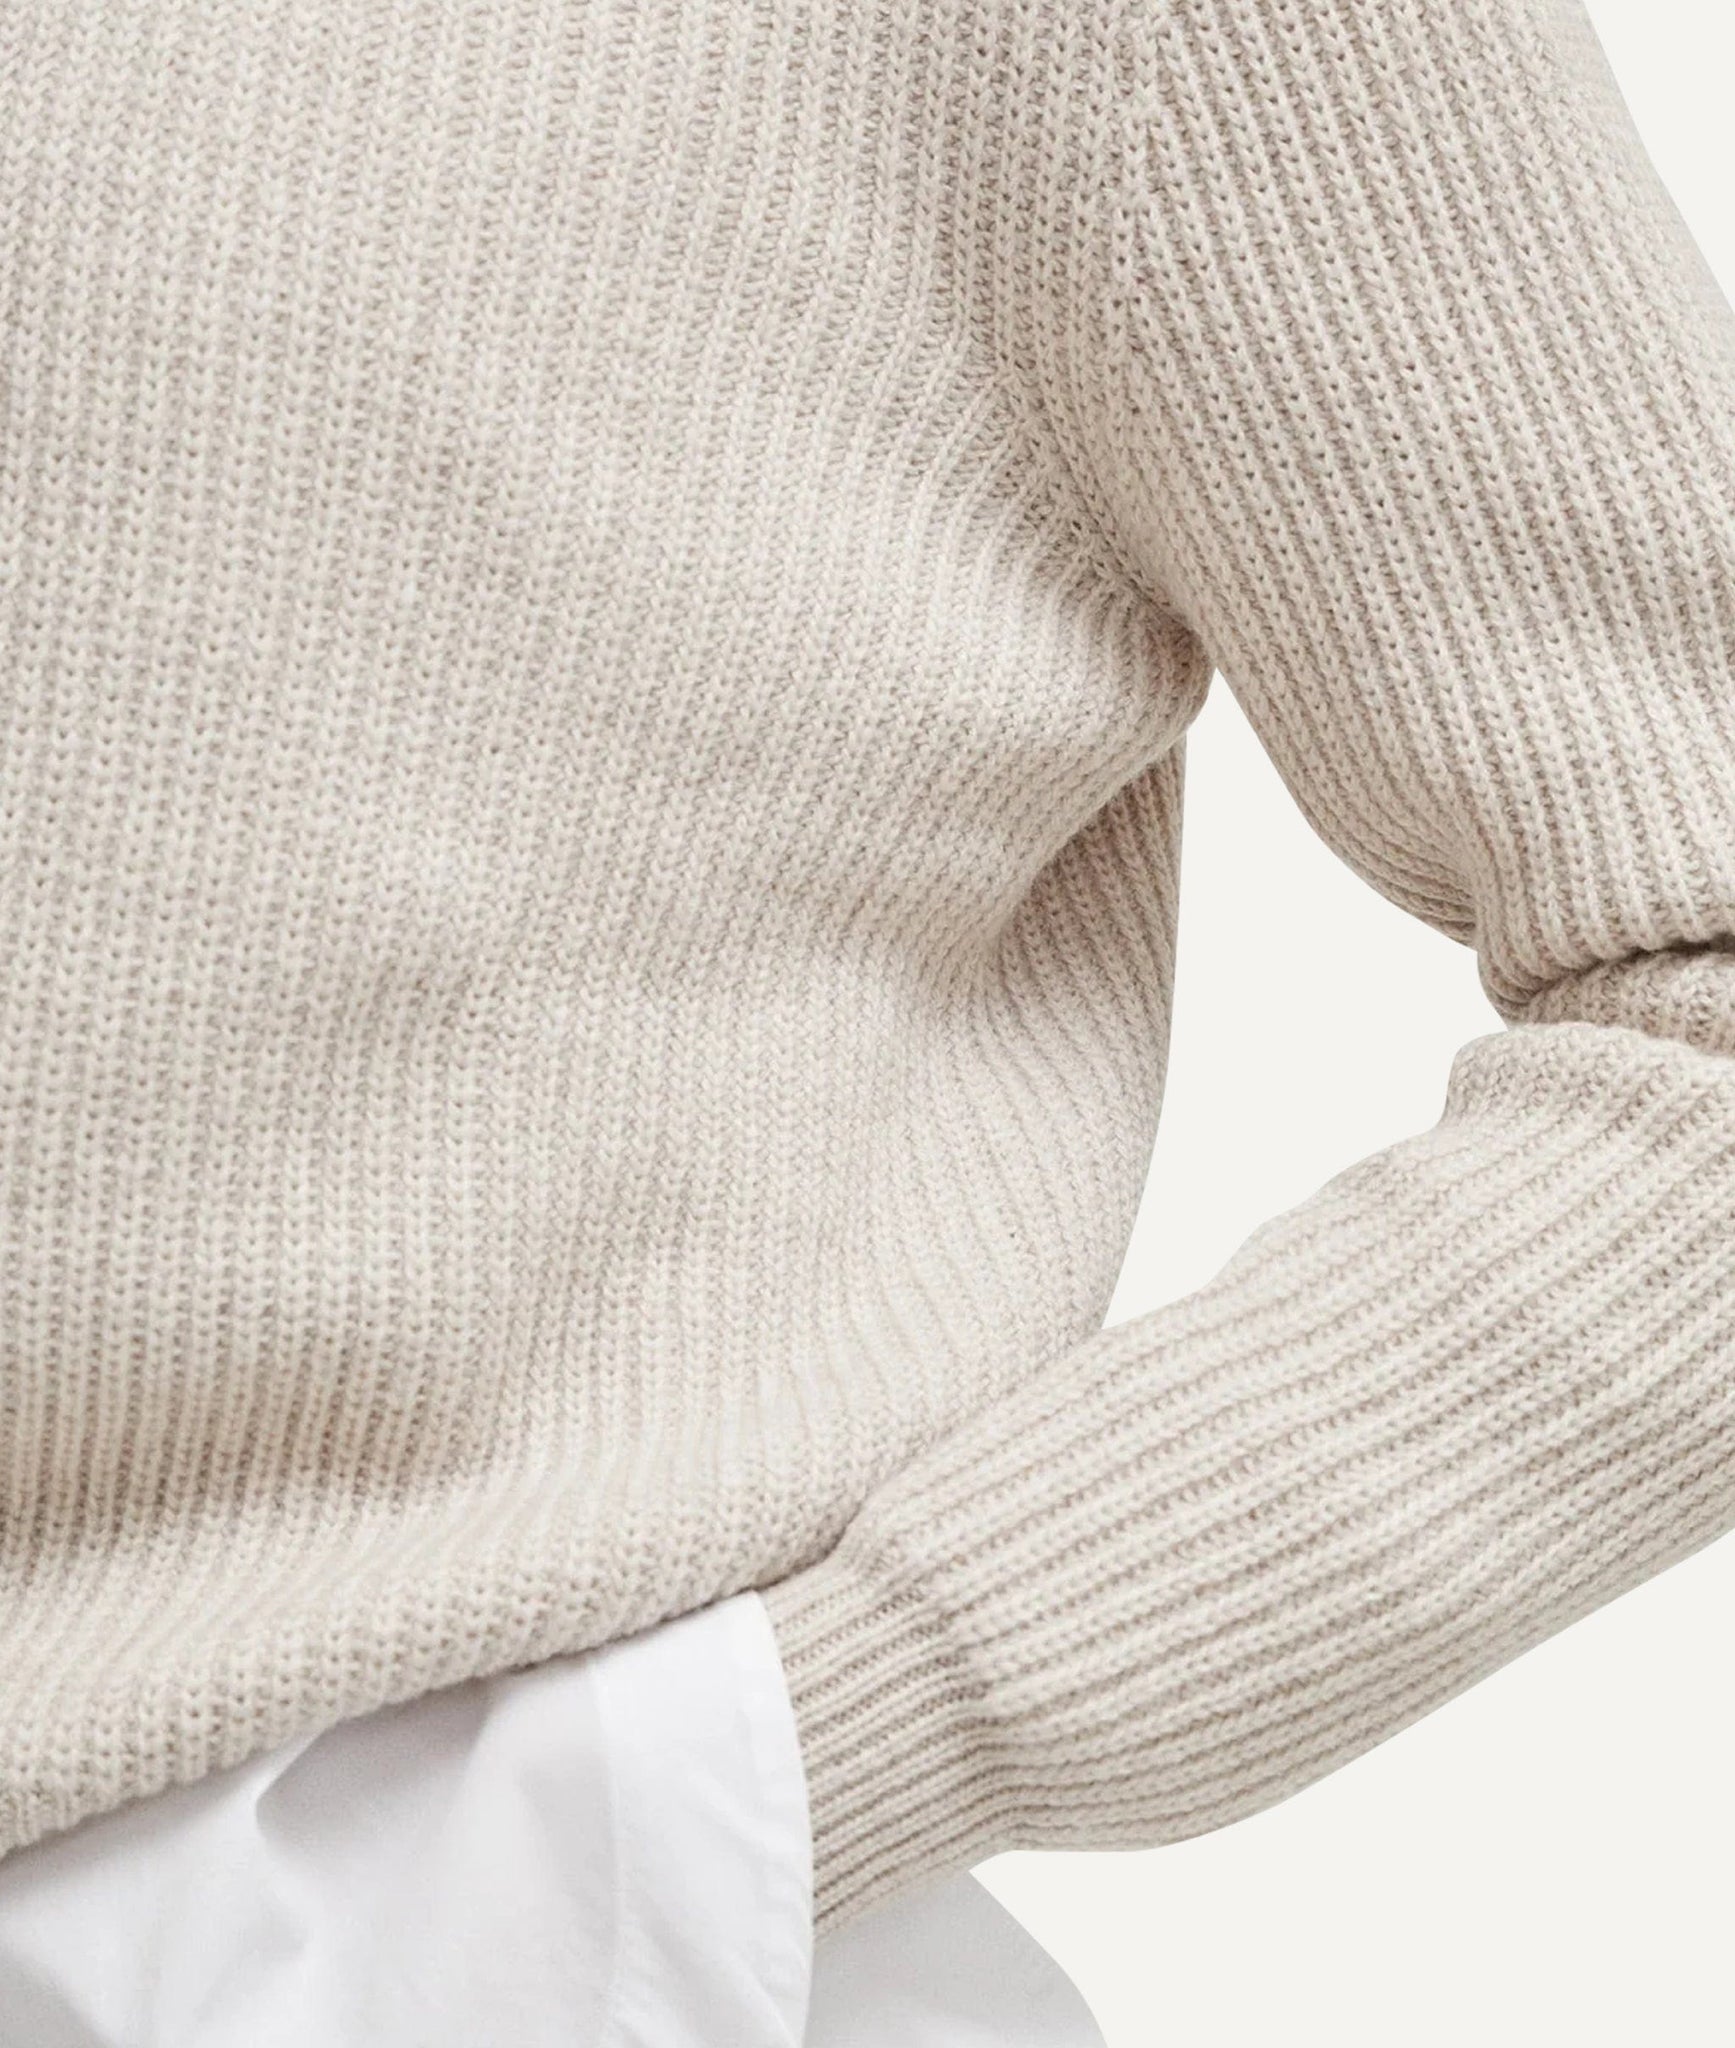 The Merino Wool Perkins Sweater